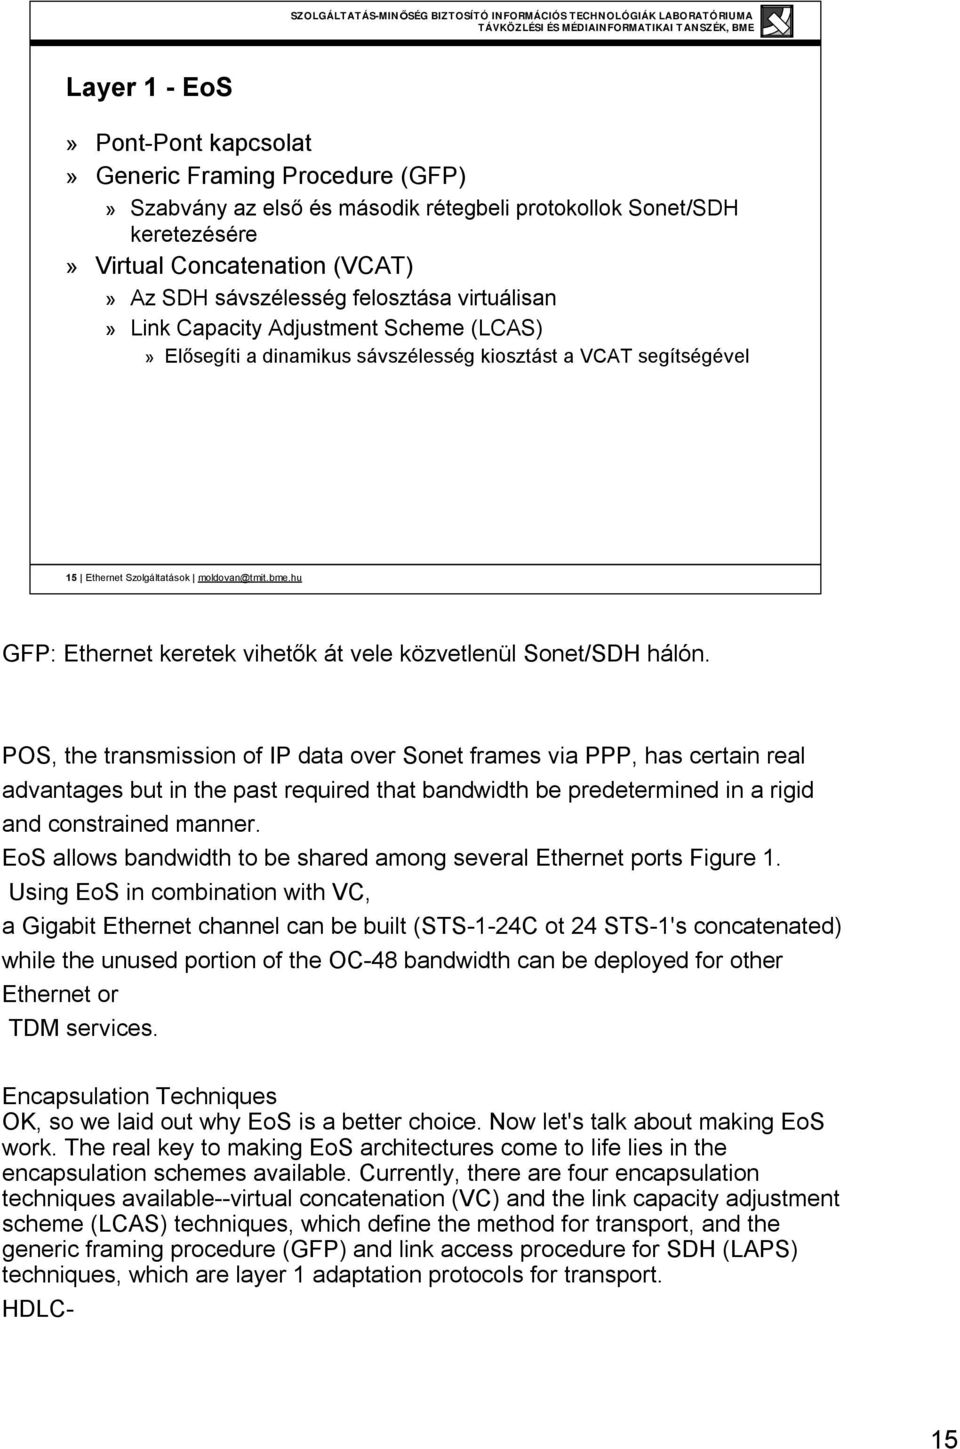 hu GFP: Ethernet keretek vihetők át vele közvetlenül Sonet/SDH hálón.